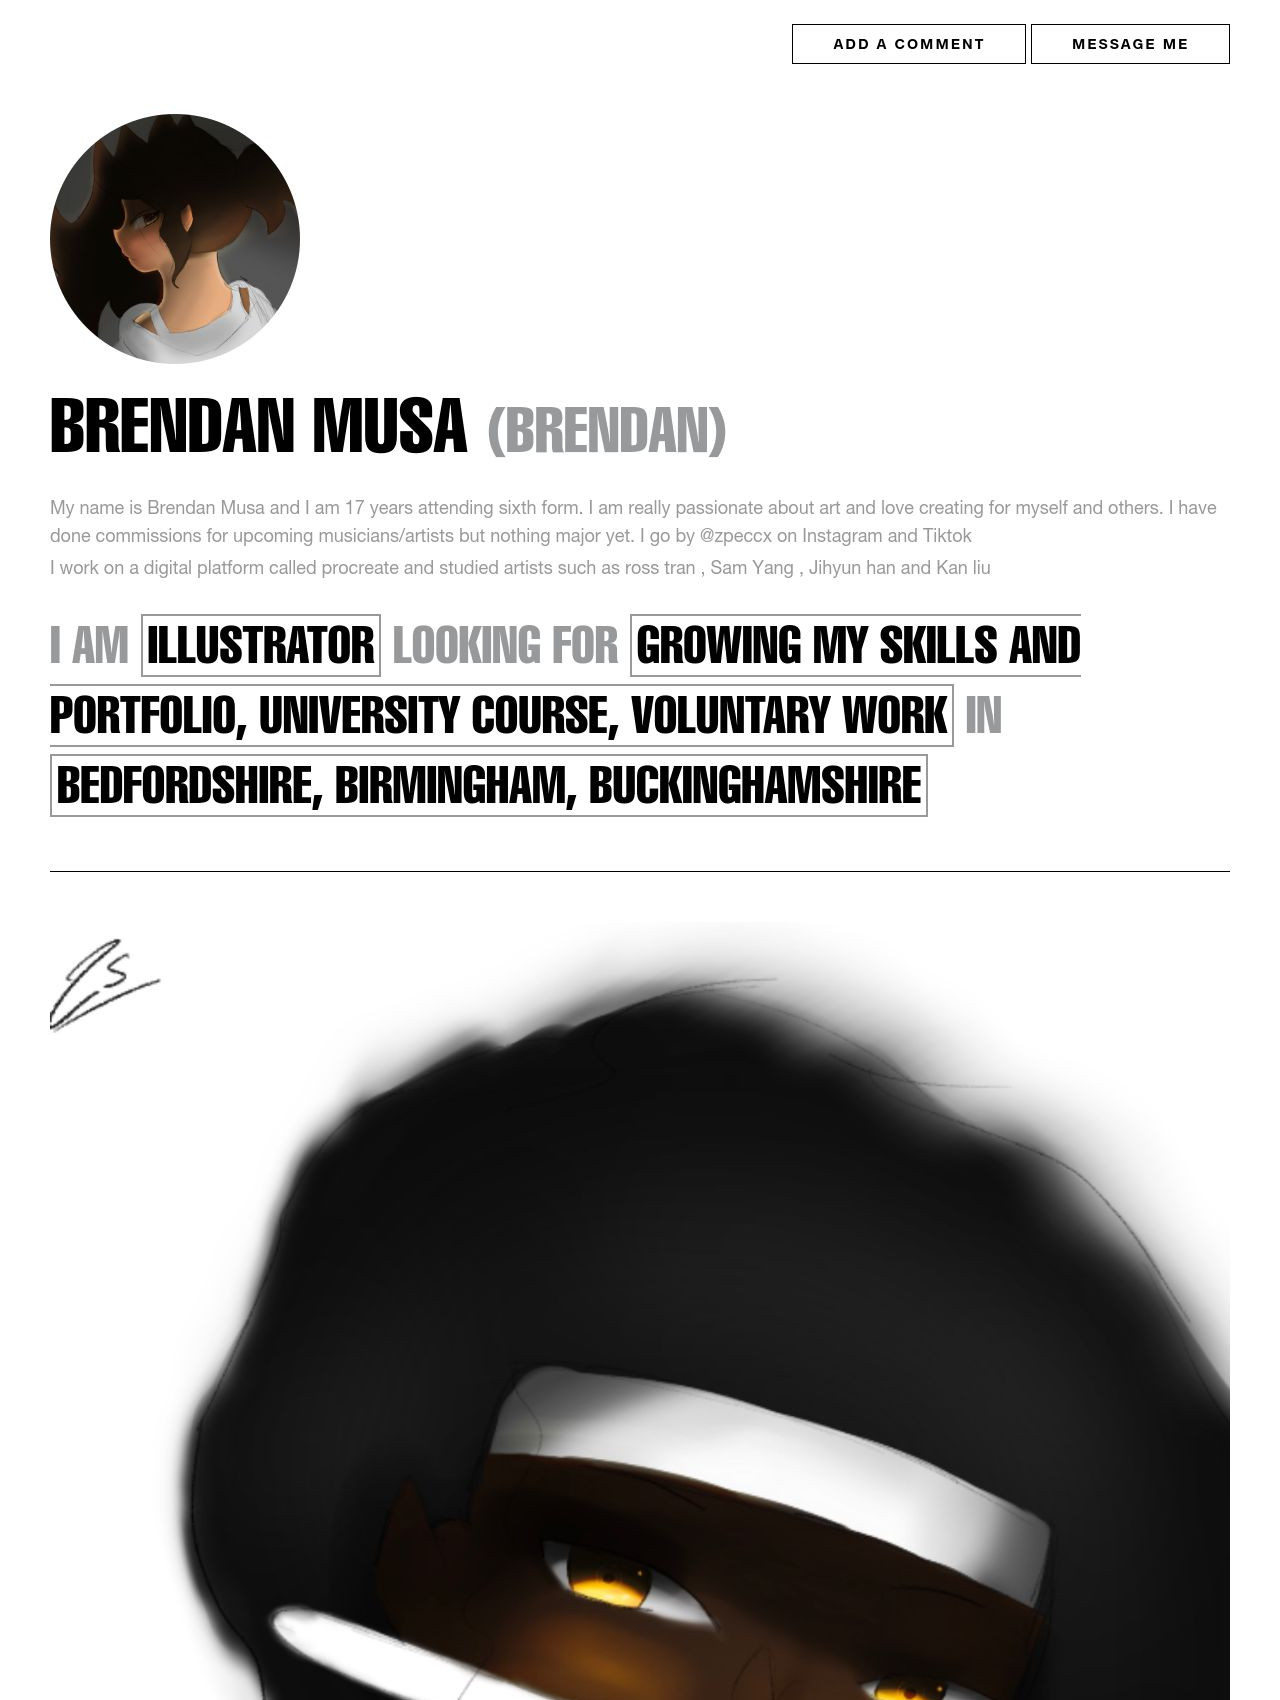 Brendan Musa